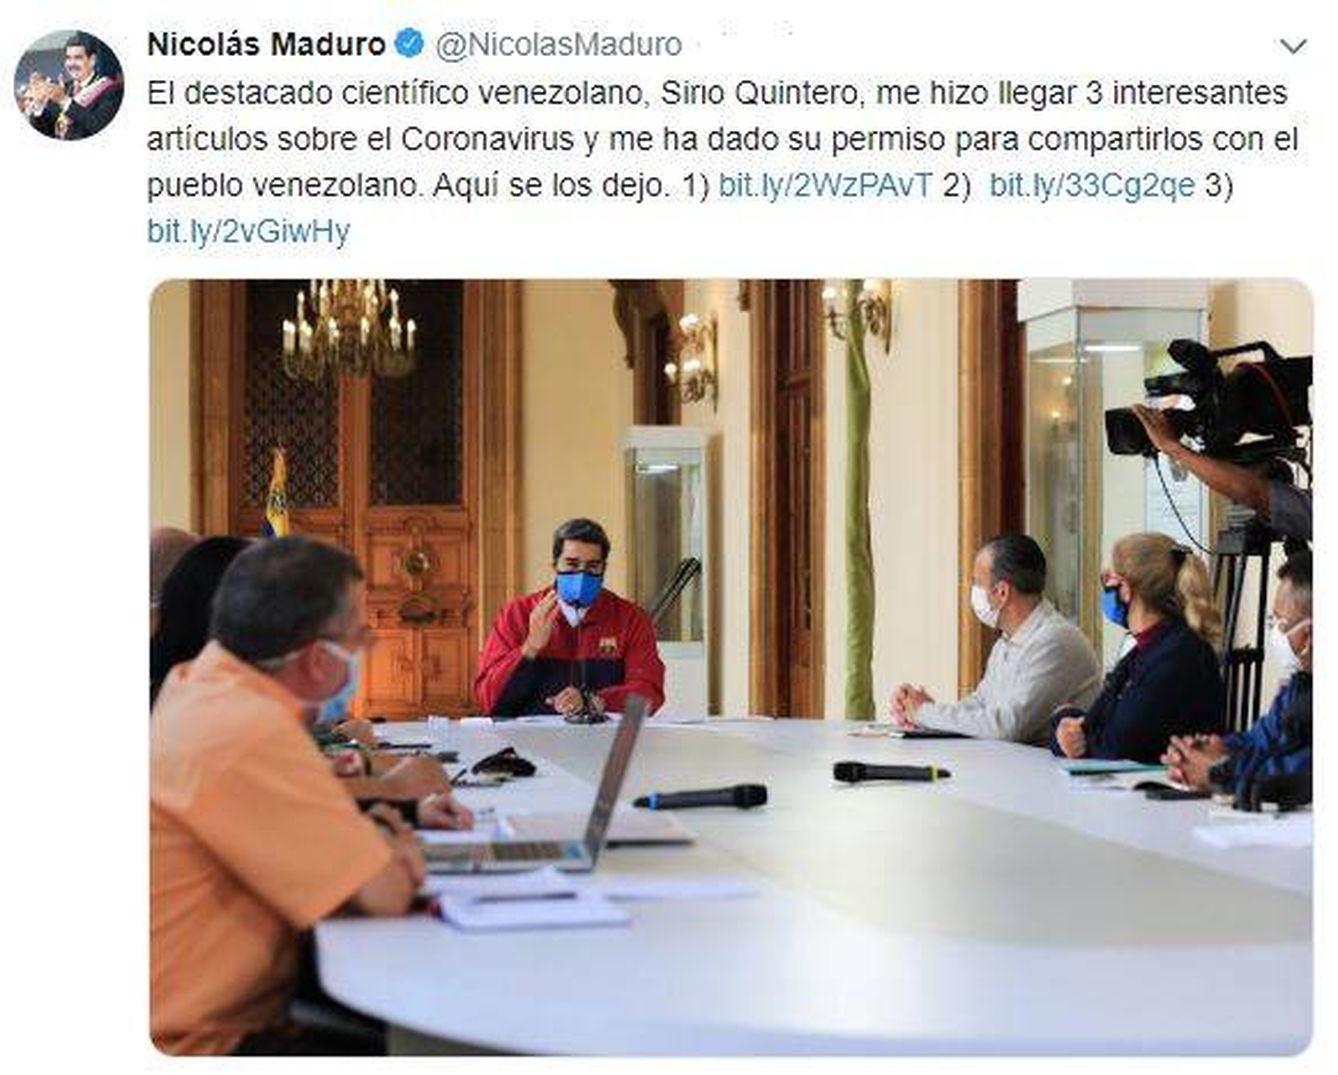 Tuit original del presidente venezolano, ya eliminado por la red social